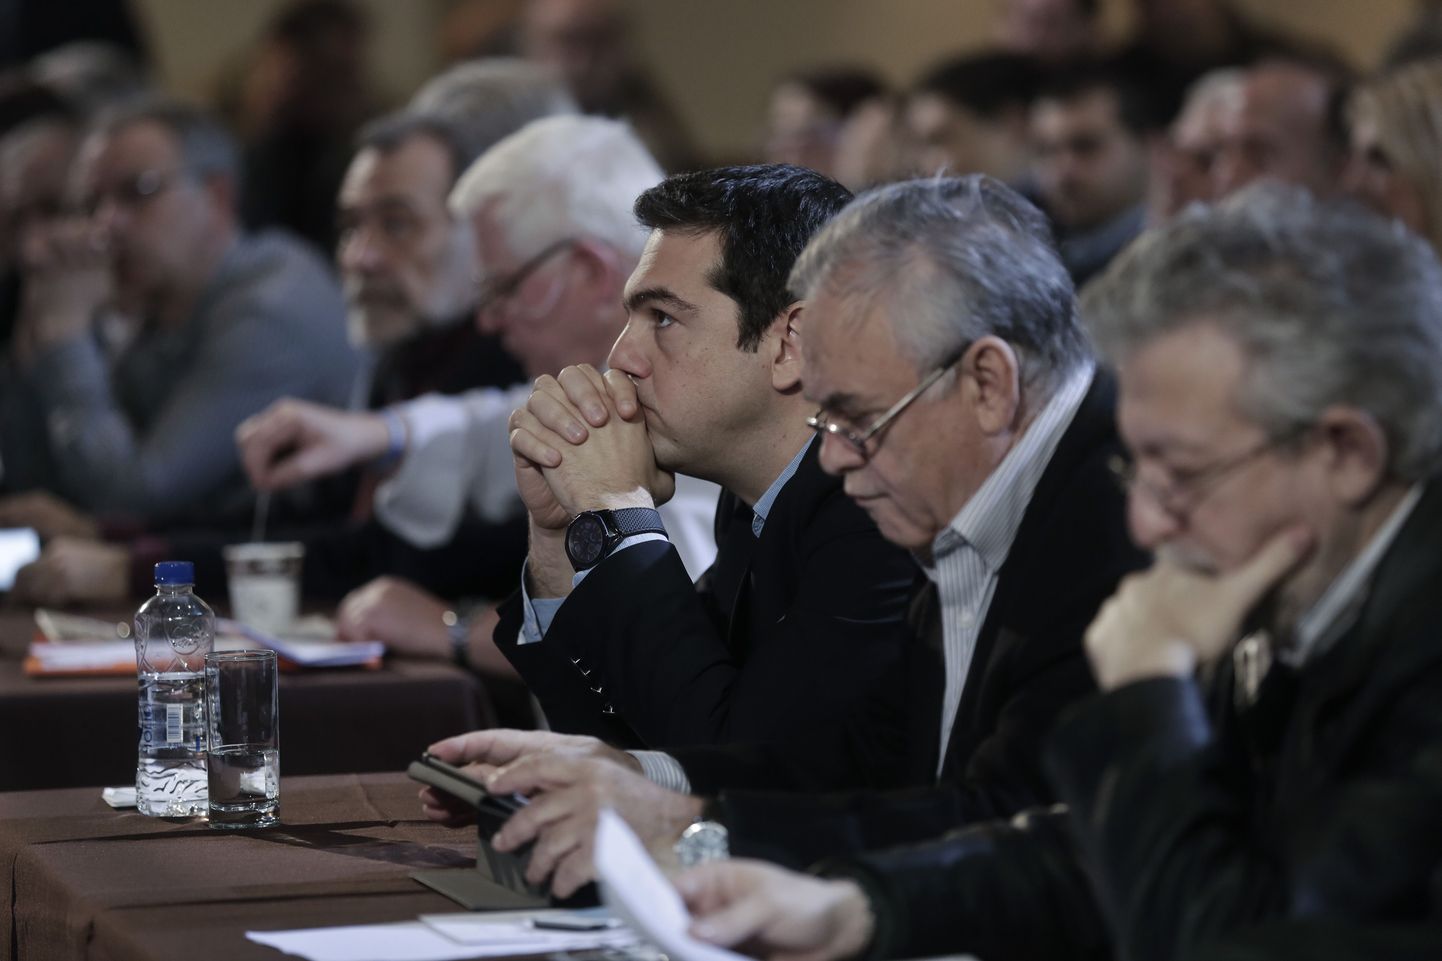 Kreeka peaminister ja Syriza juht Alexis Tsipras (vasakult kolmas) on hädas partei siseopositsiooniga.